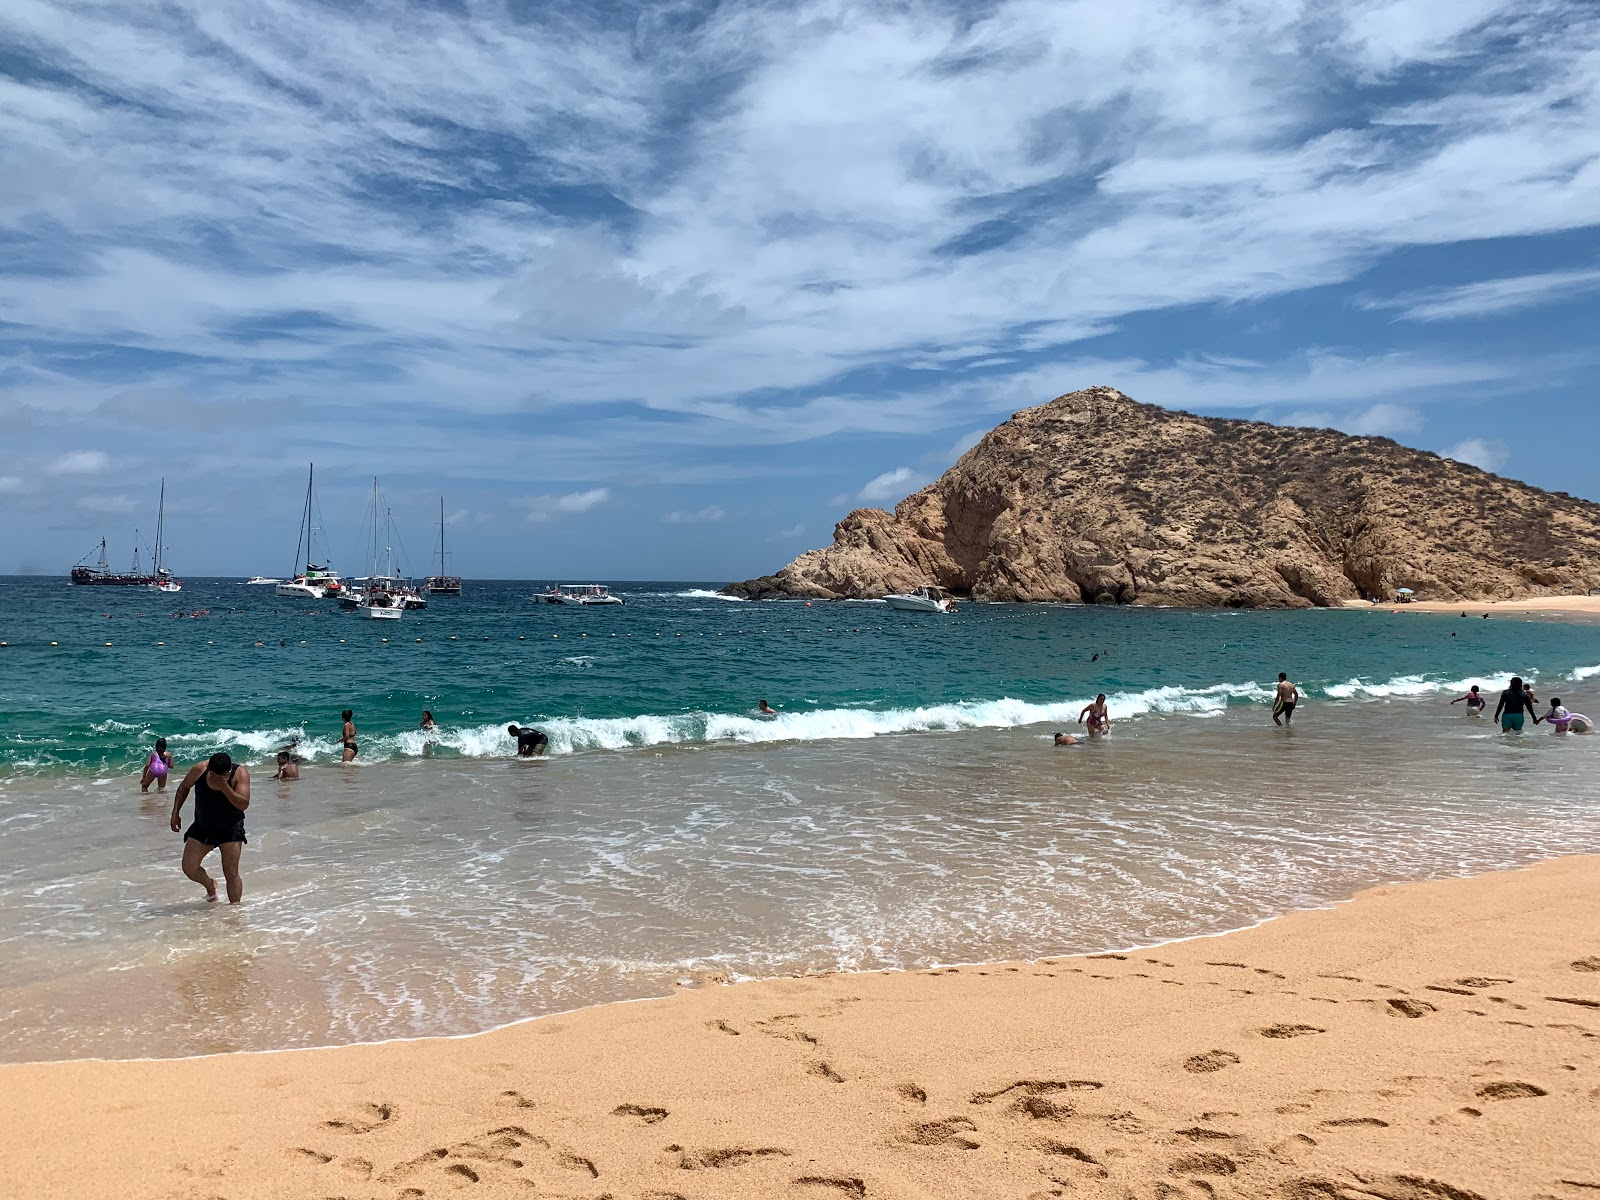 Zdjęcie Playa Santa Maria - popularne miejsce wśród znawców relaksu